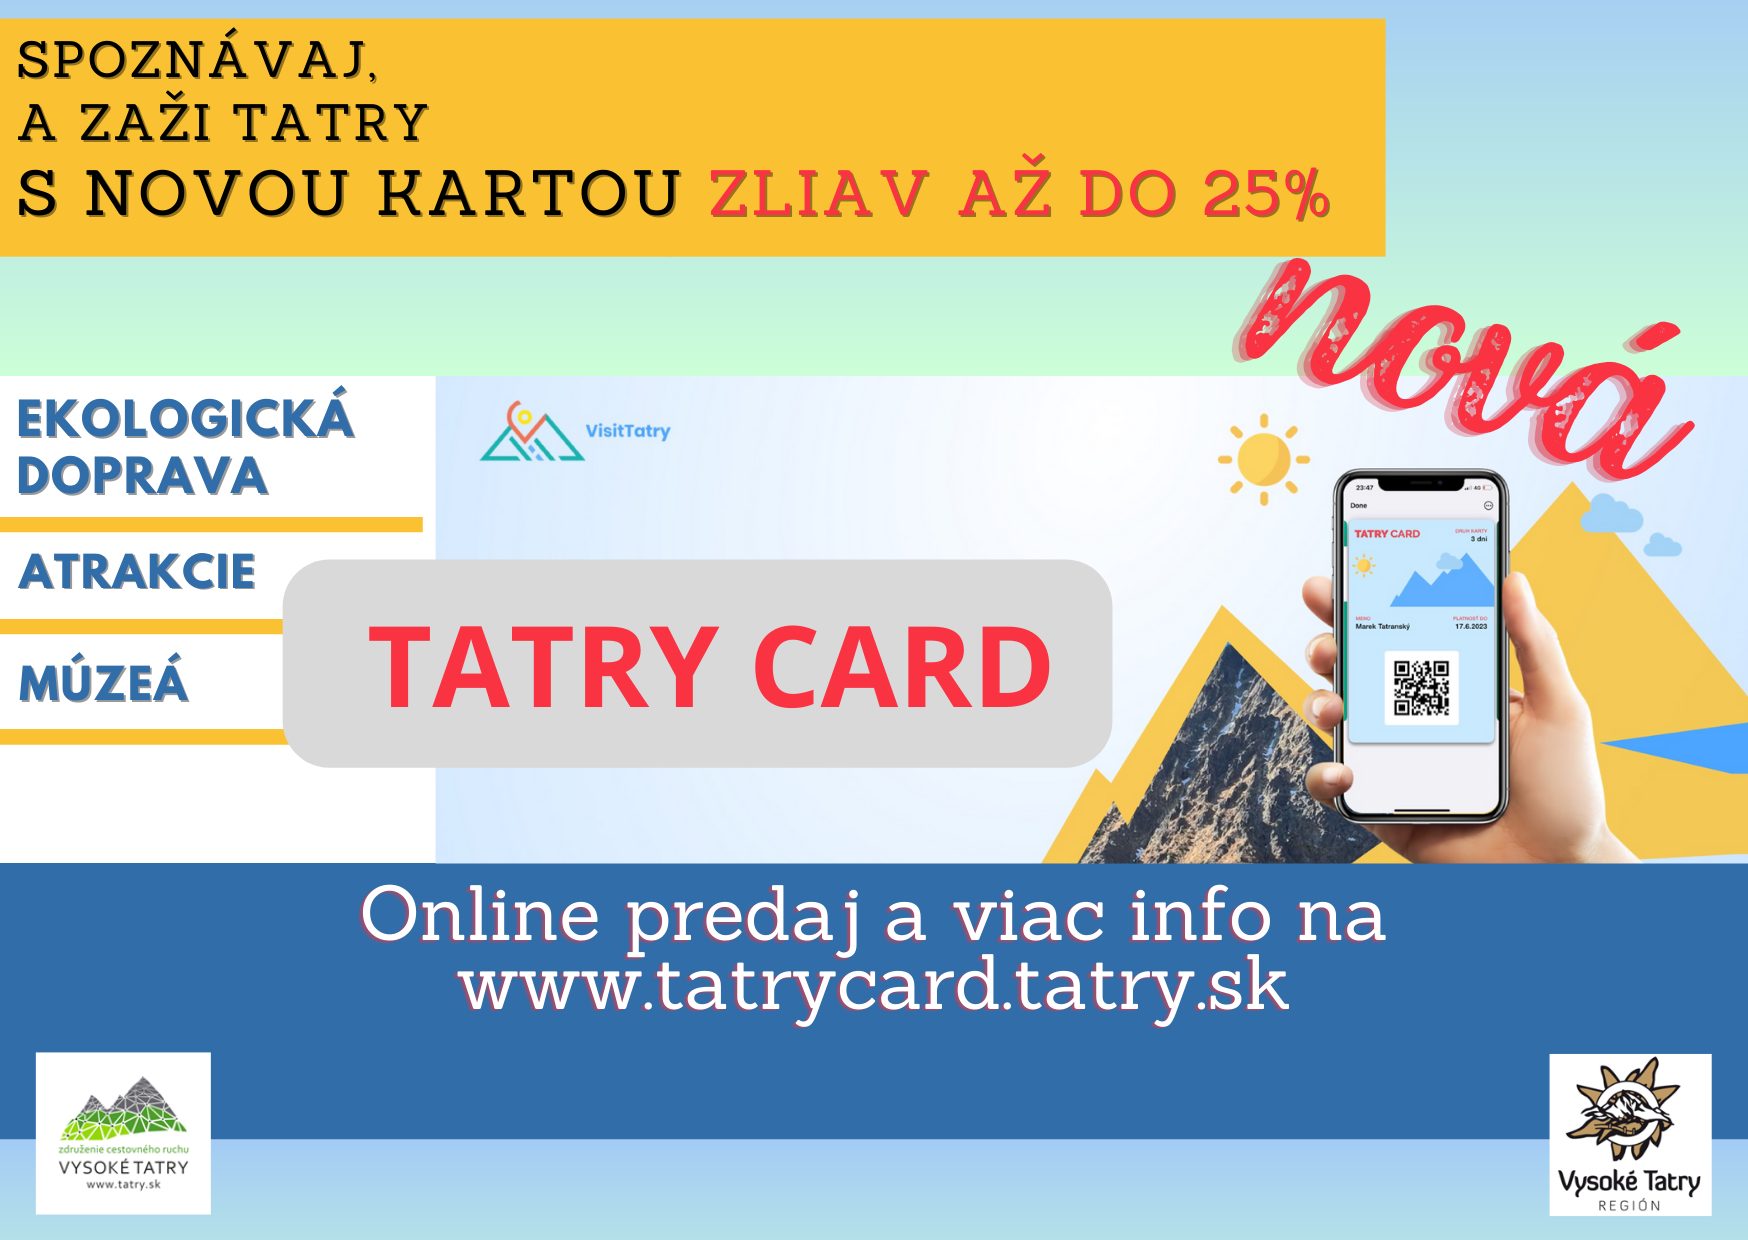 Objavte Vysoké Tatry za zlomok ceny s TATRY CARD